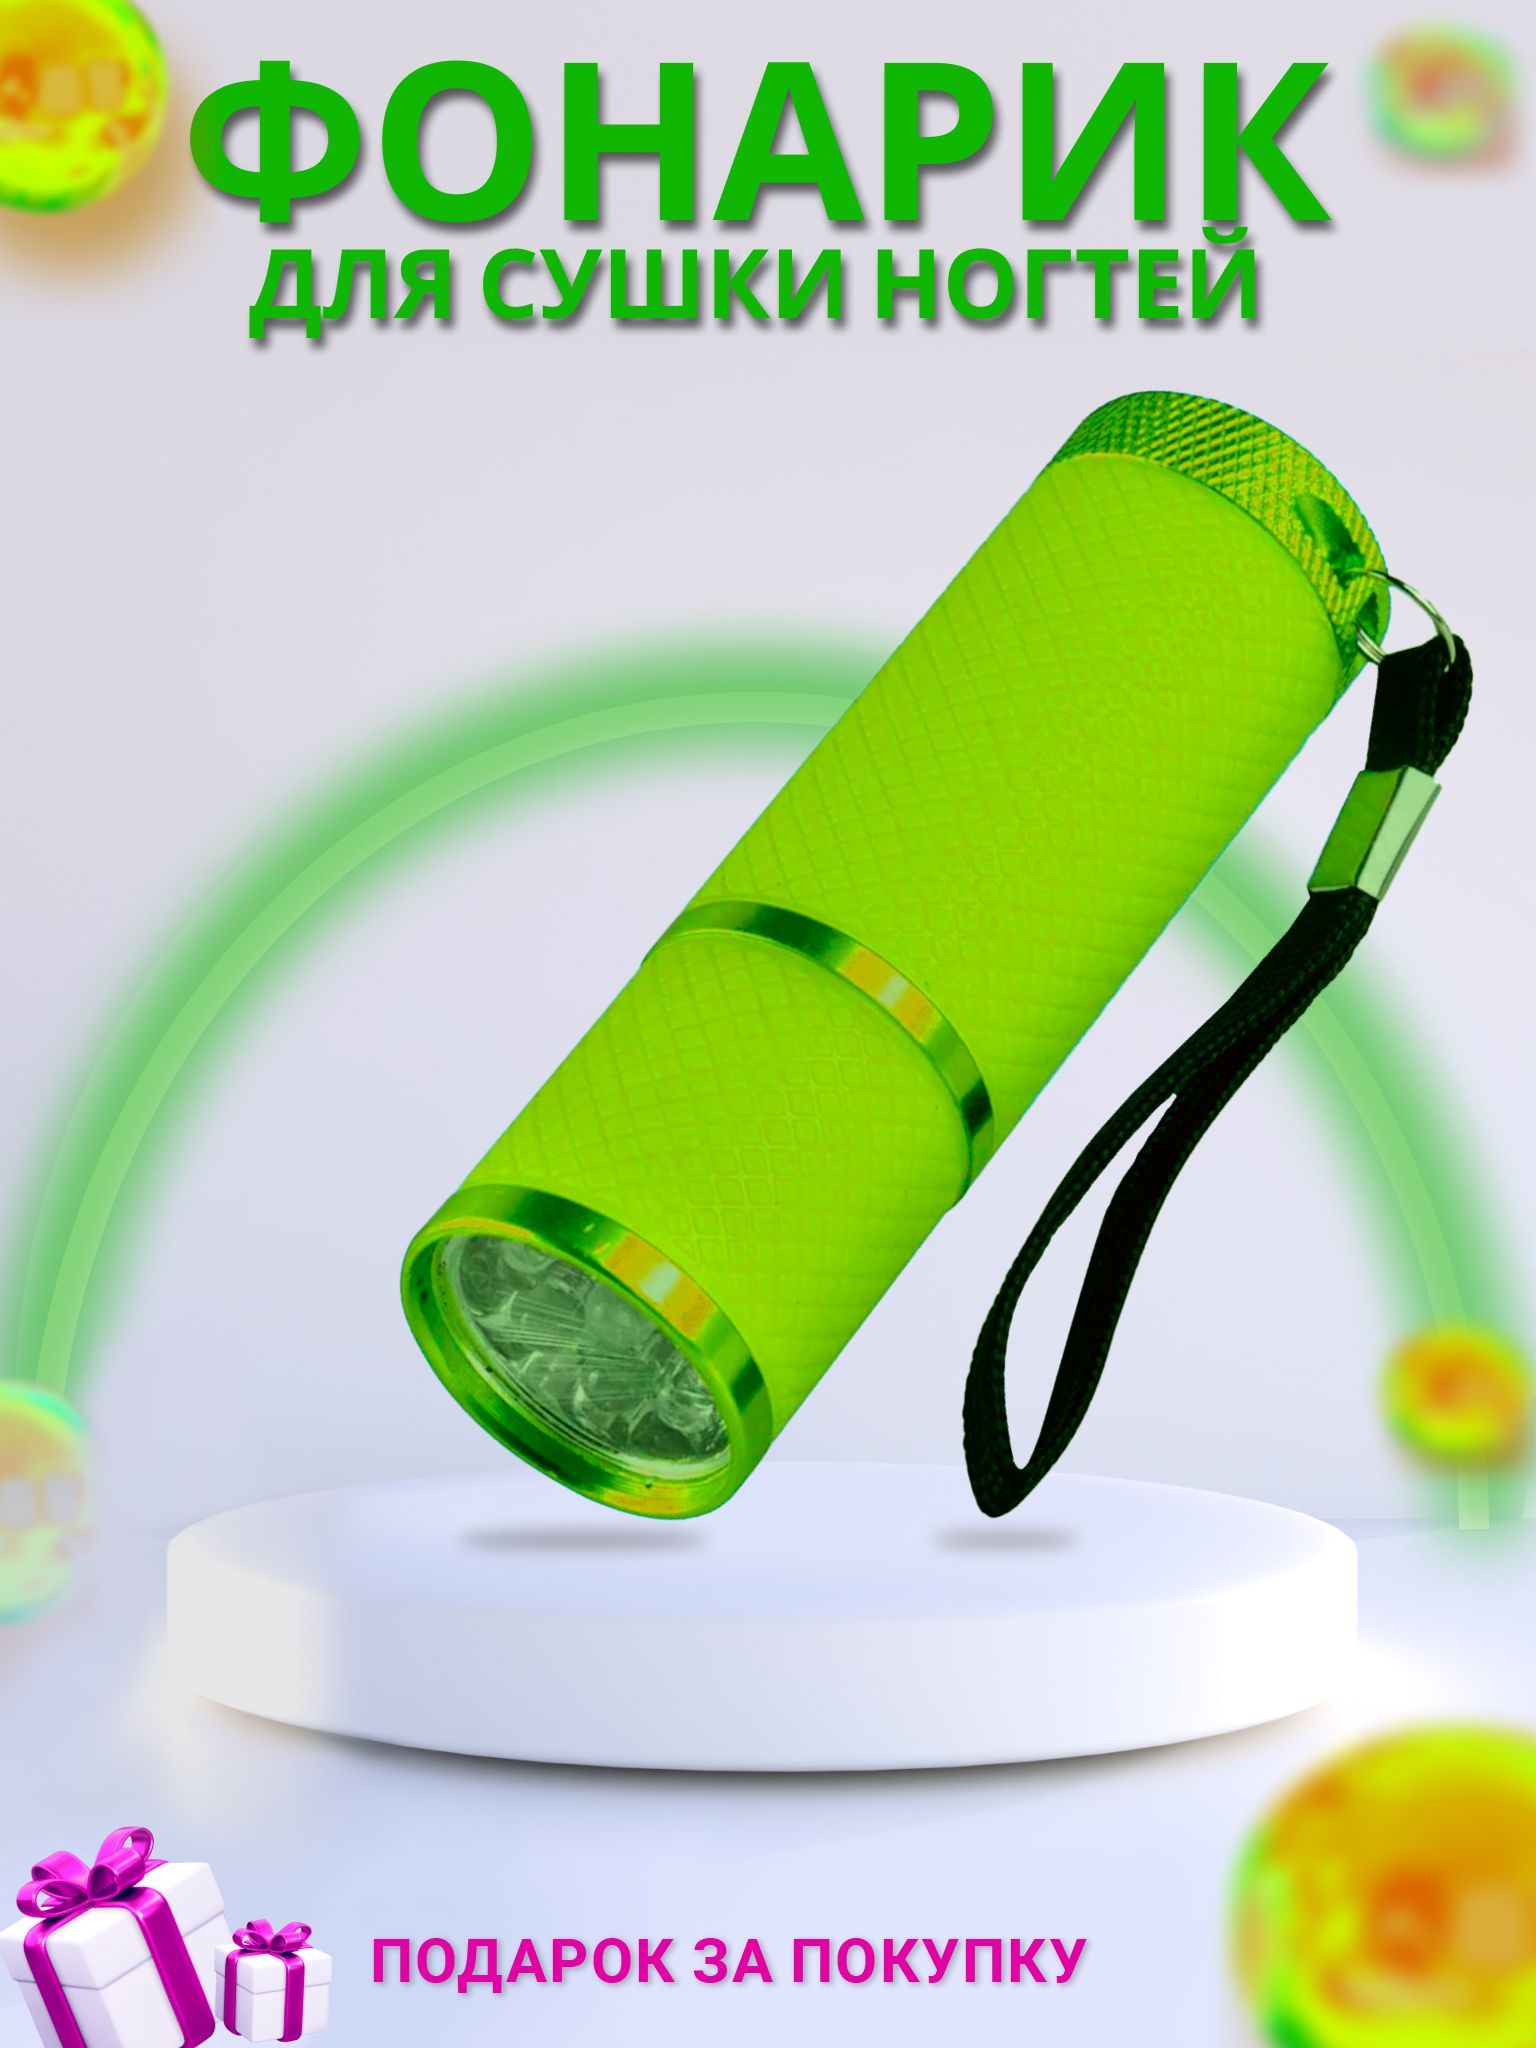 Фонарик светодиодный для сушки ногтей лампа для маникюра и педикюра сотовый телефон bq m 1853 life 1 77 2 sim 32мб microsd 600 мач фонарик черно зеленый